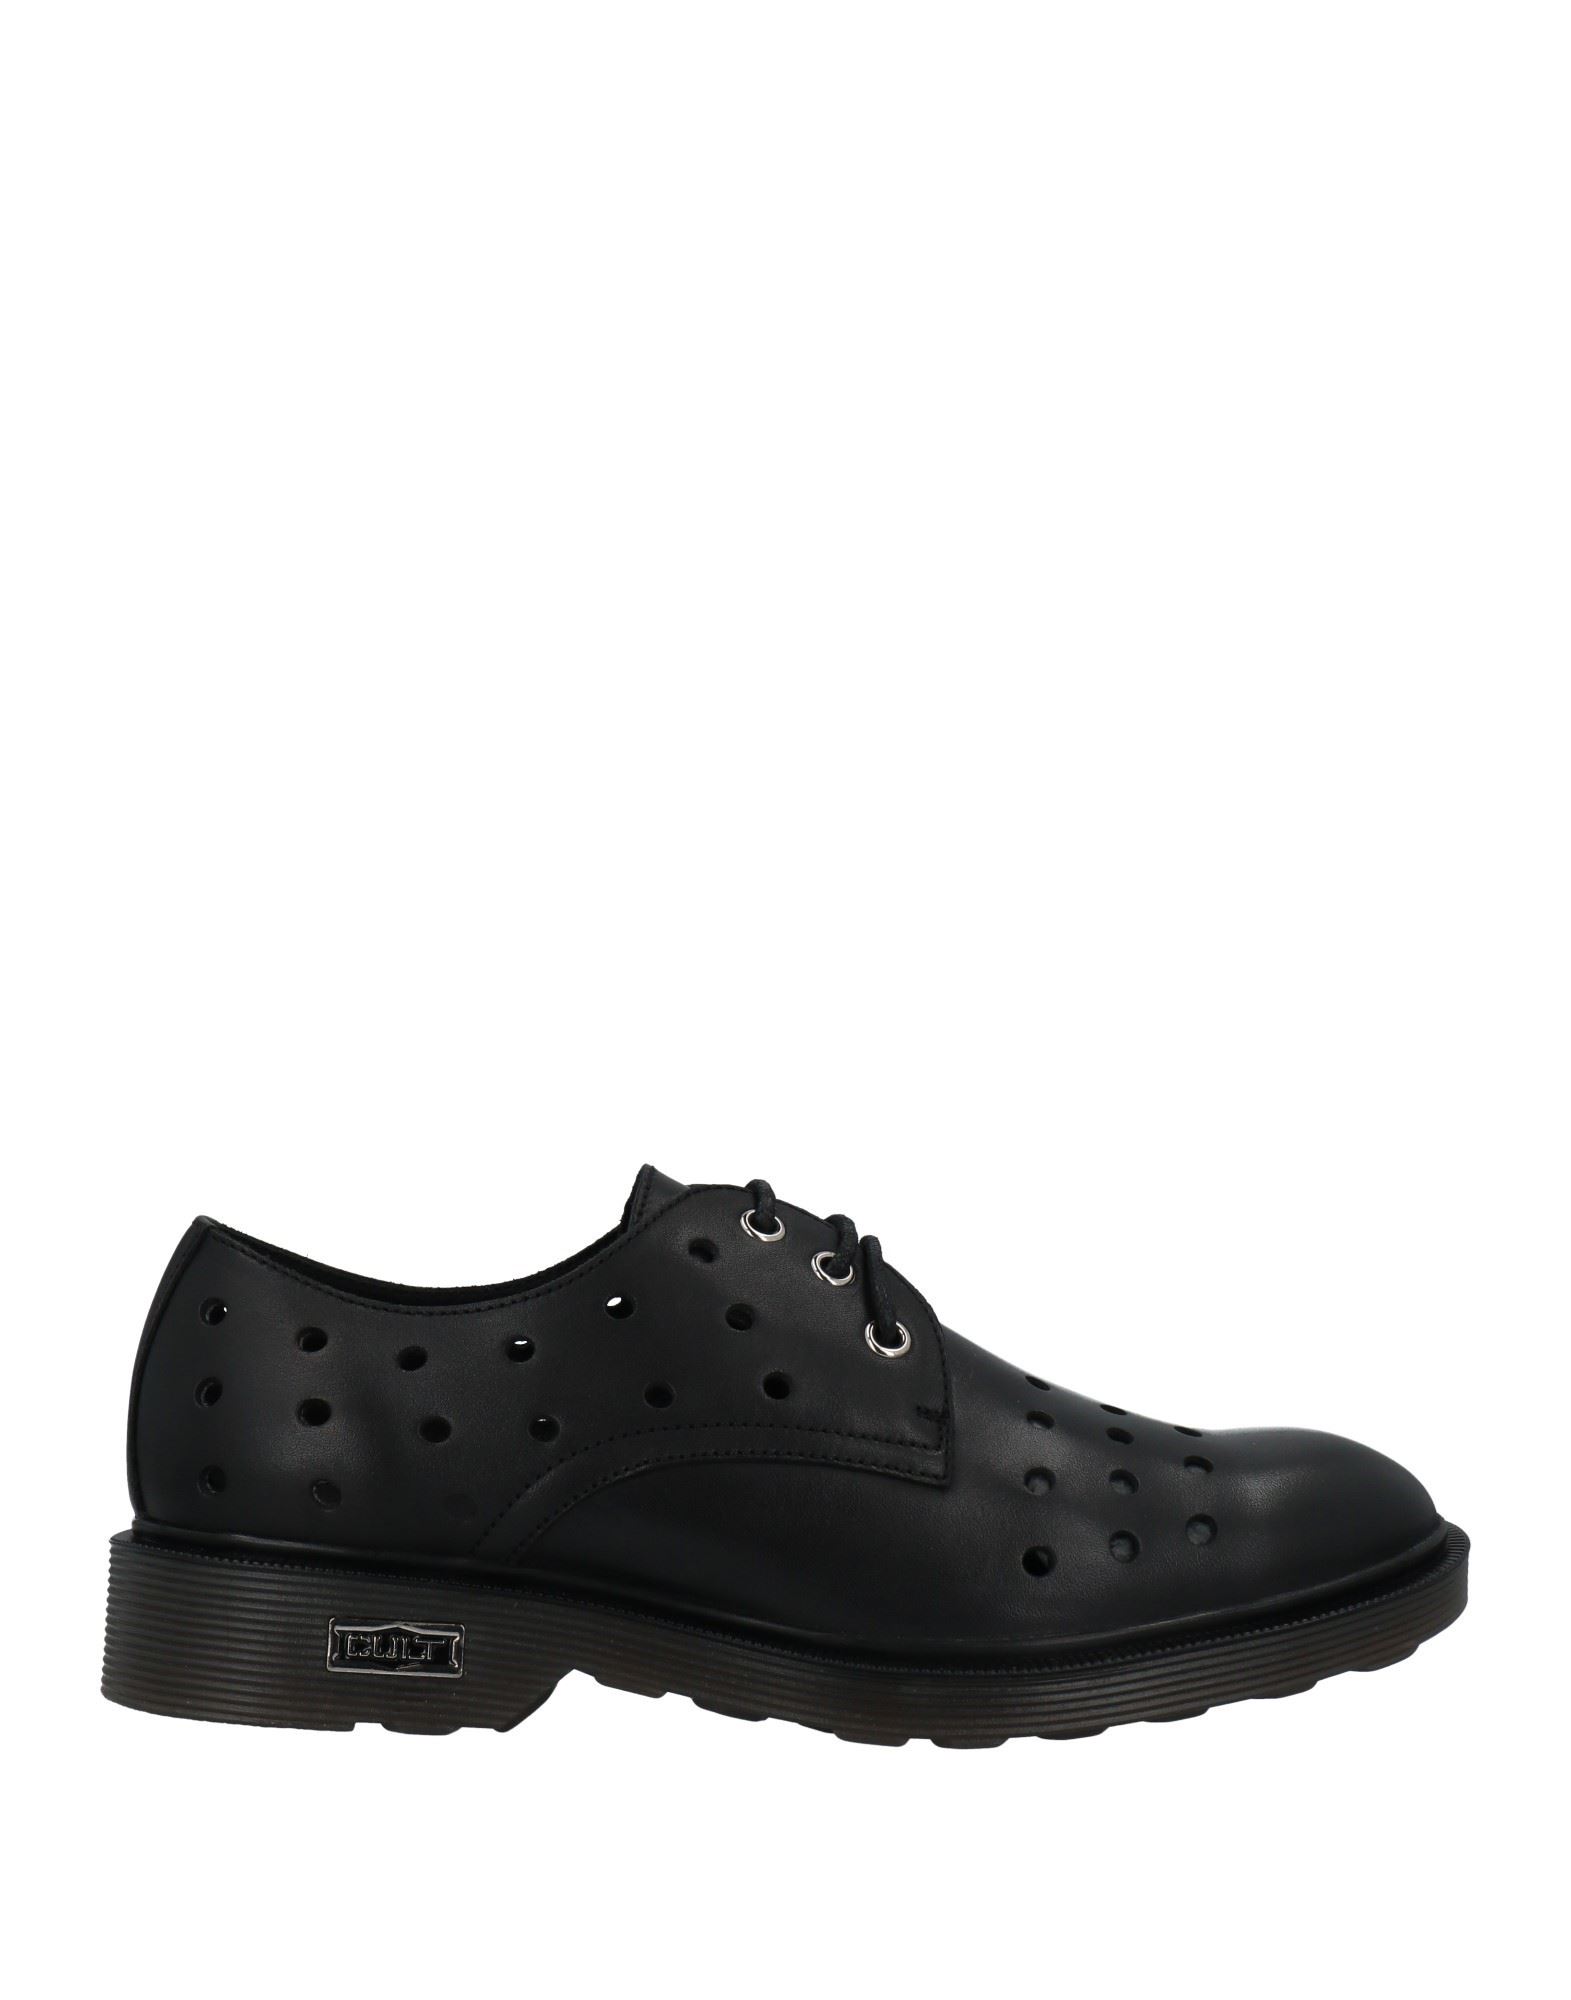 Shop Cult Man Lace-up Shoes Black Size 7 Soft Leather